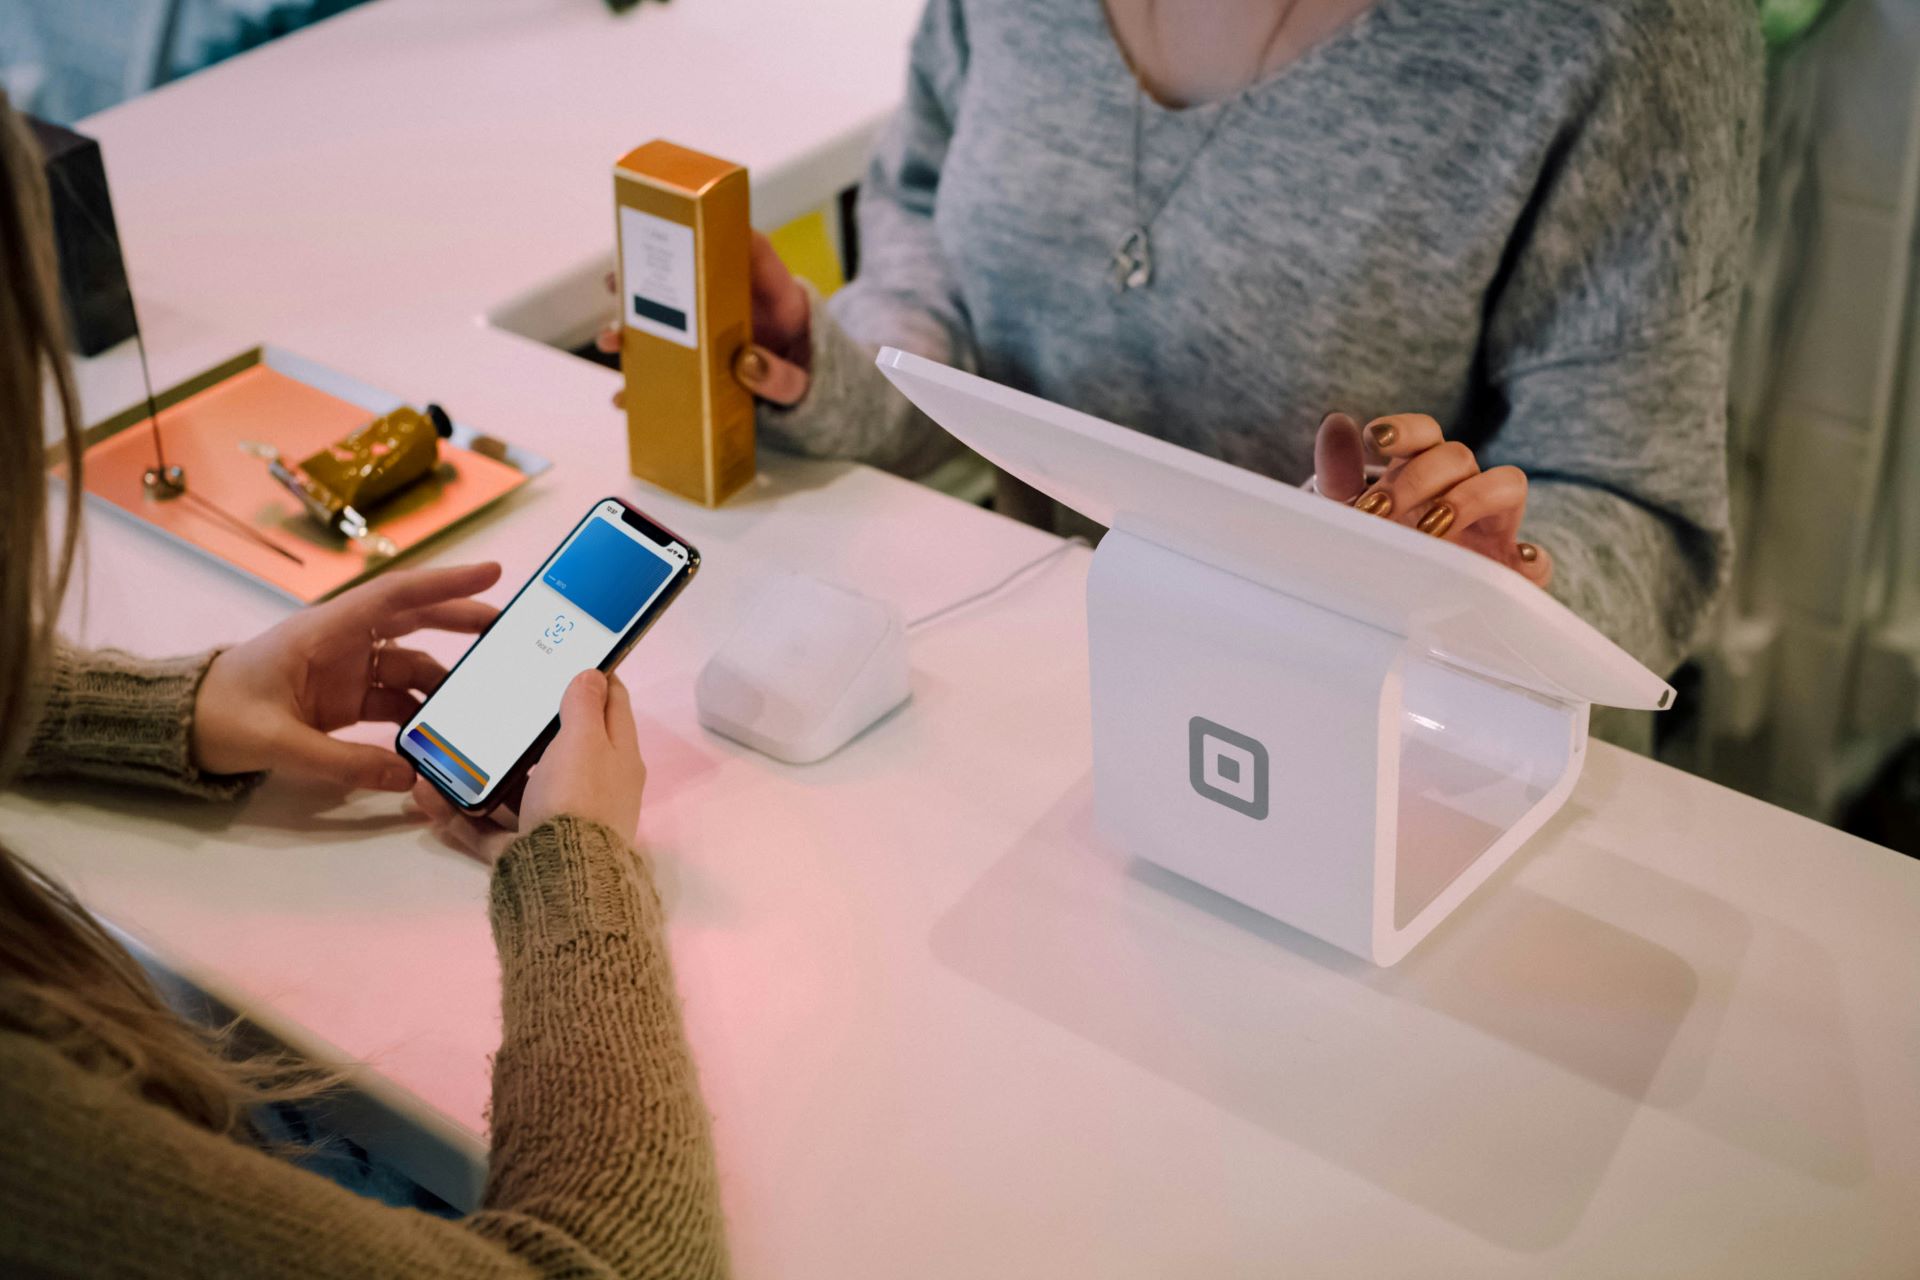 אייפון עם Apple Pay פתוח מנסה לשלם במסוף תשלום NFC